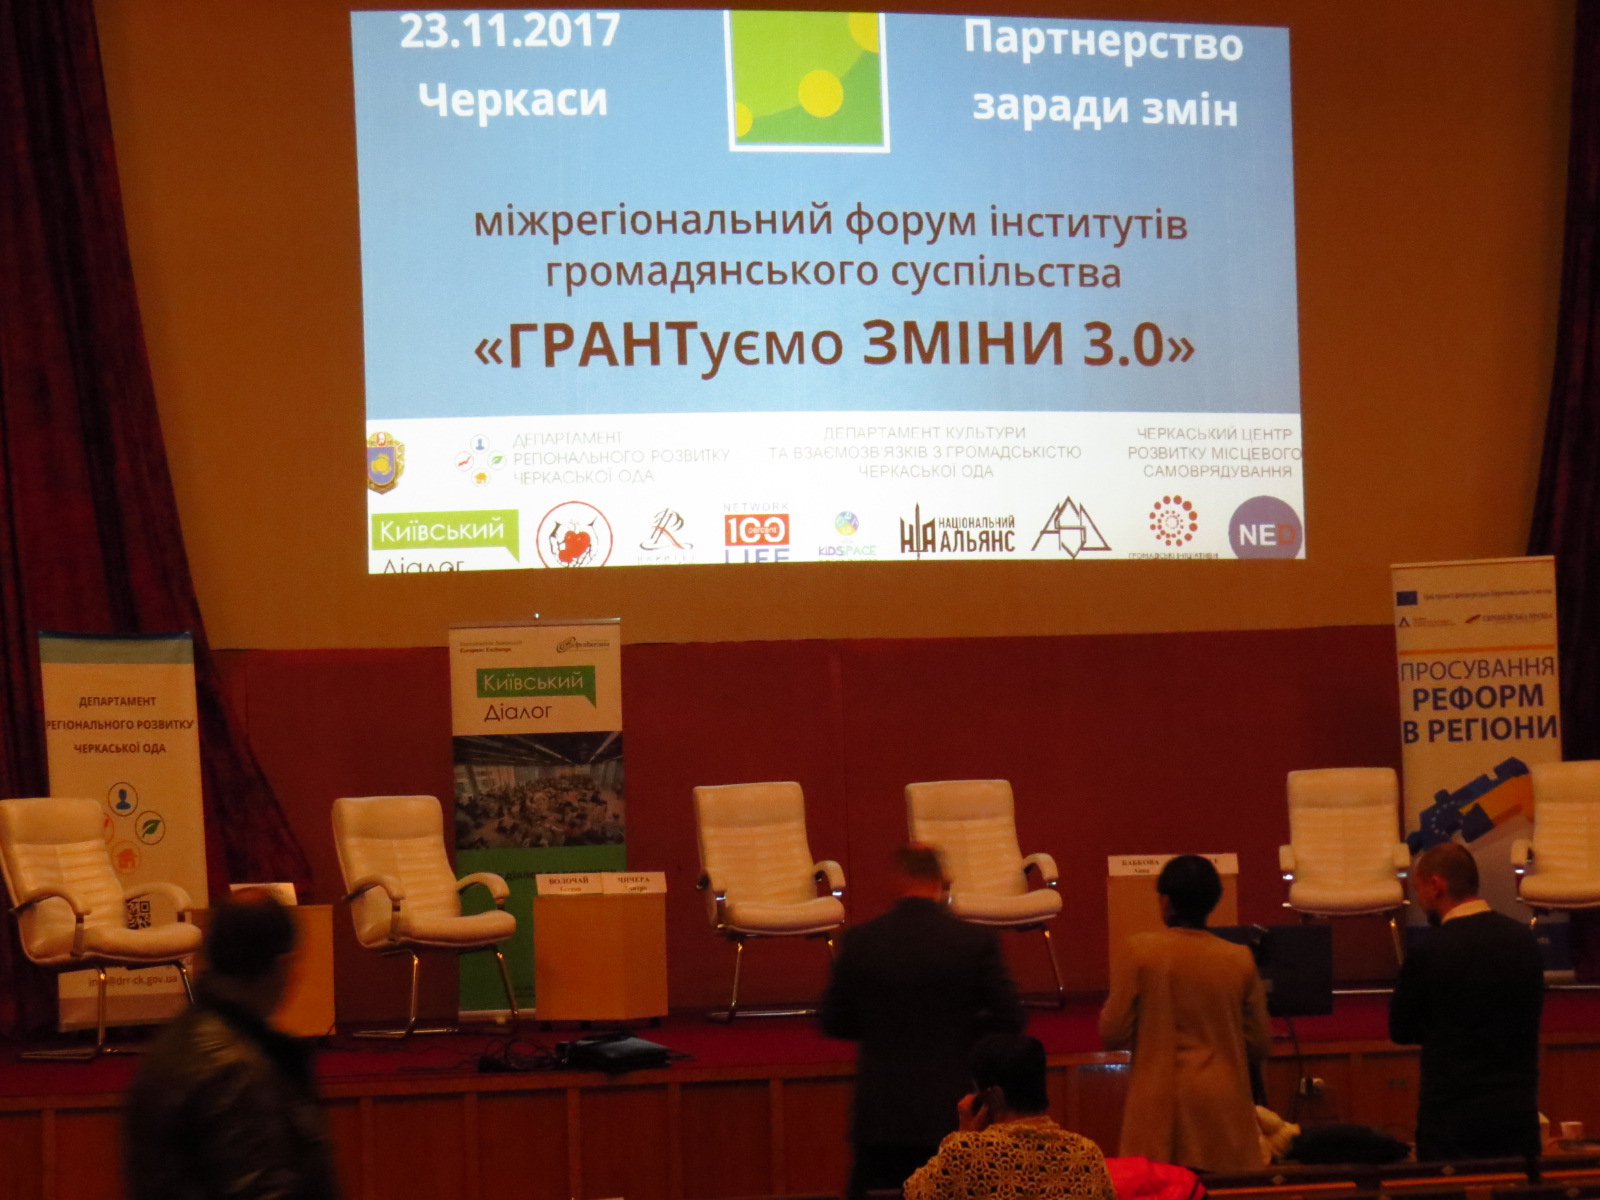 У Черкасах пройшов третій форум громадський організацій та ініціатив “ГРАНТуємо ЗМІНИ 3.0” – “Партнерство заради змін”